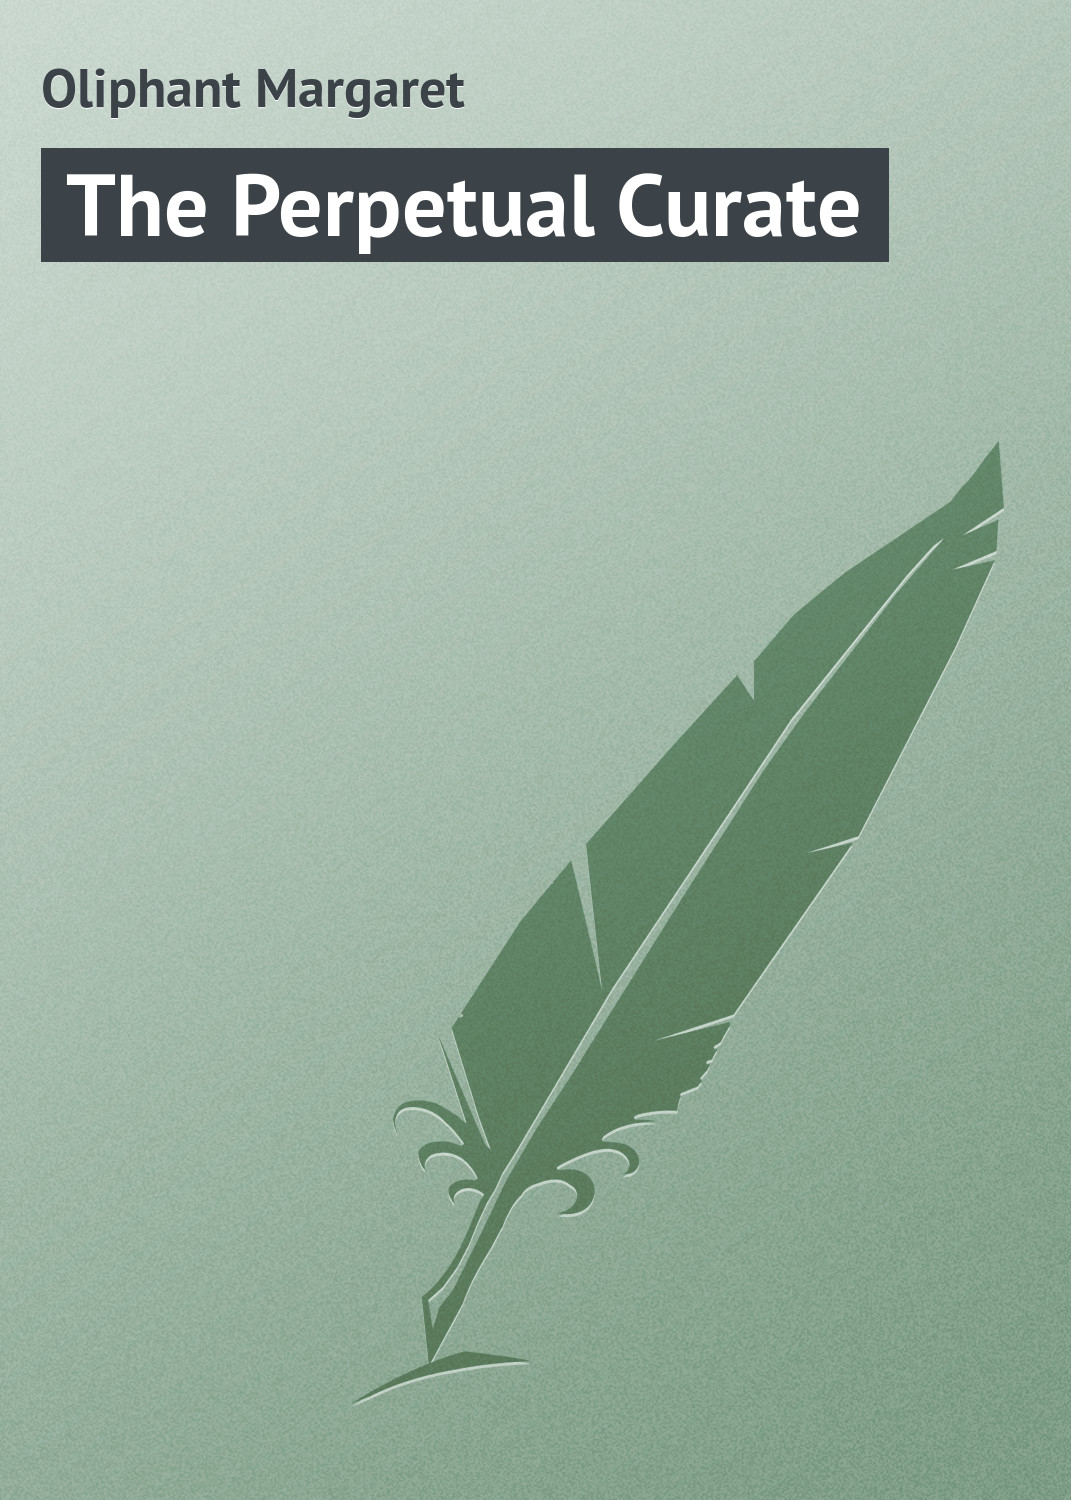 Книга The Perpetual Curate из серии , созданная Margaret Oliphant, может относится к жанру Зарубежная классика, Иностранные языки. Стоимость электронной книги The Perpetual Curate с идентификатором 23158851 составляет 5.99 руб.